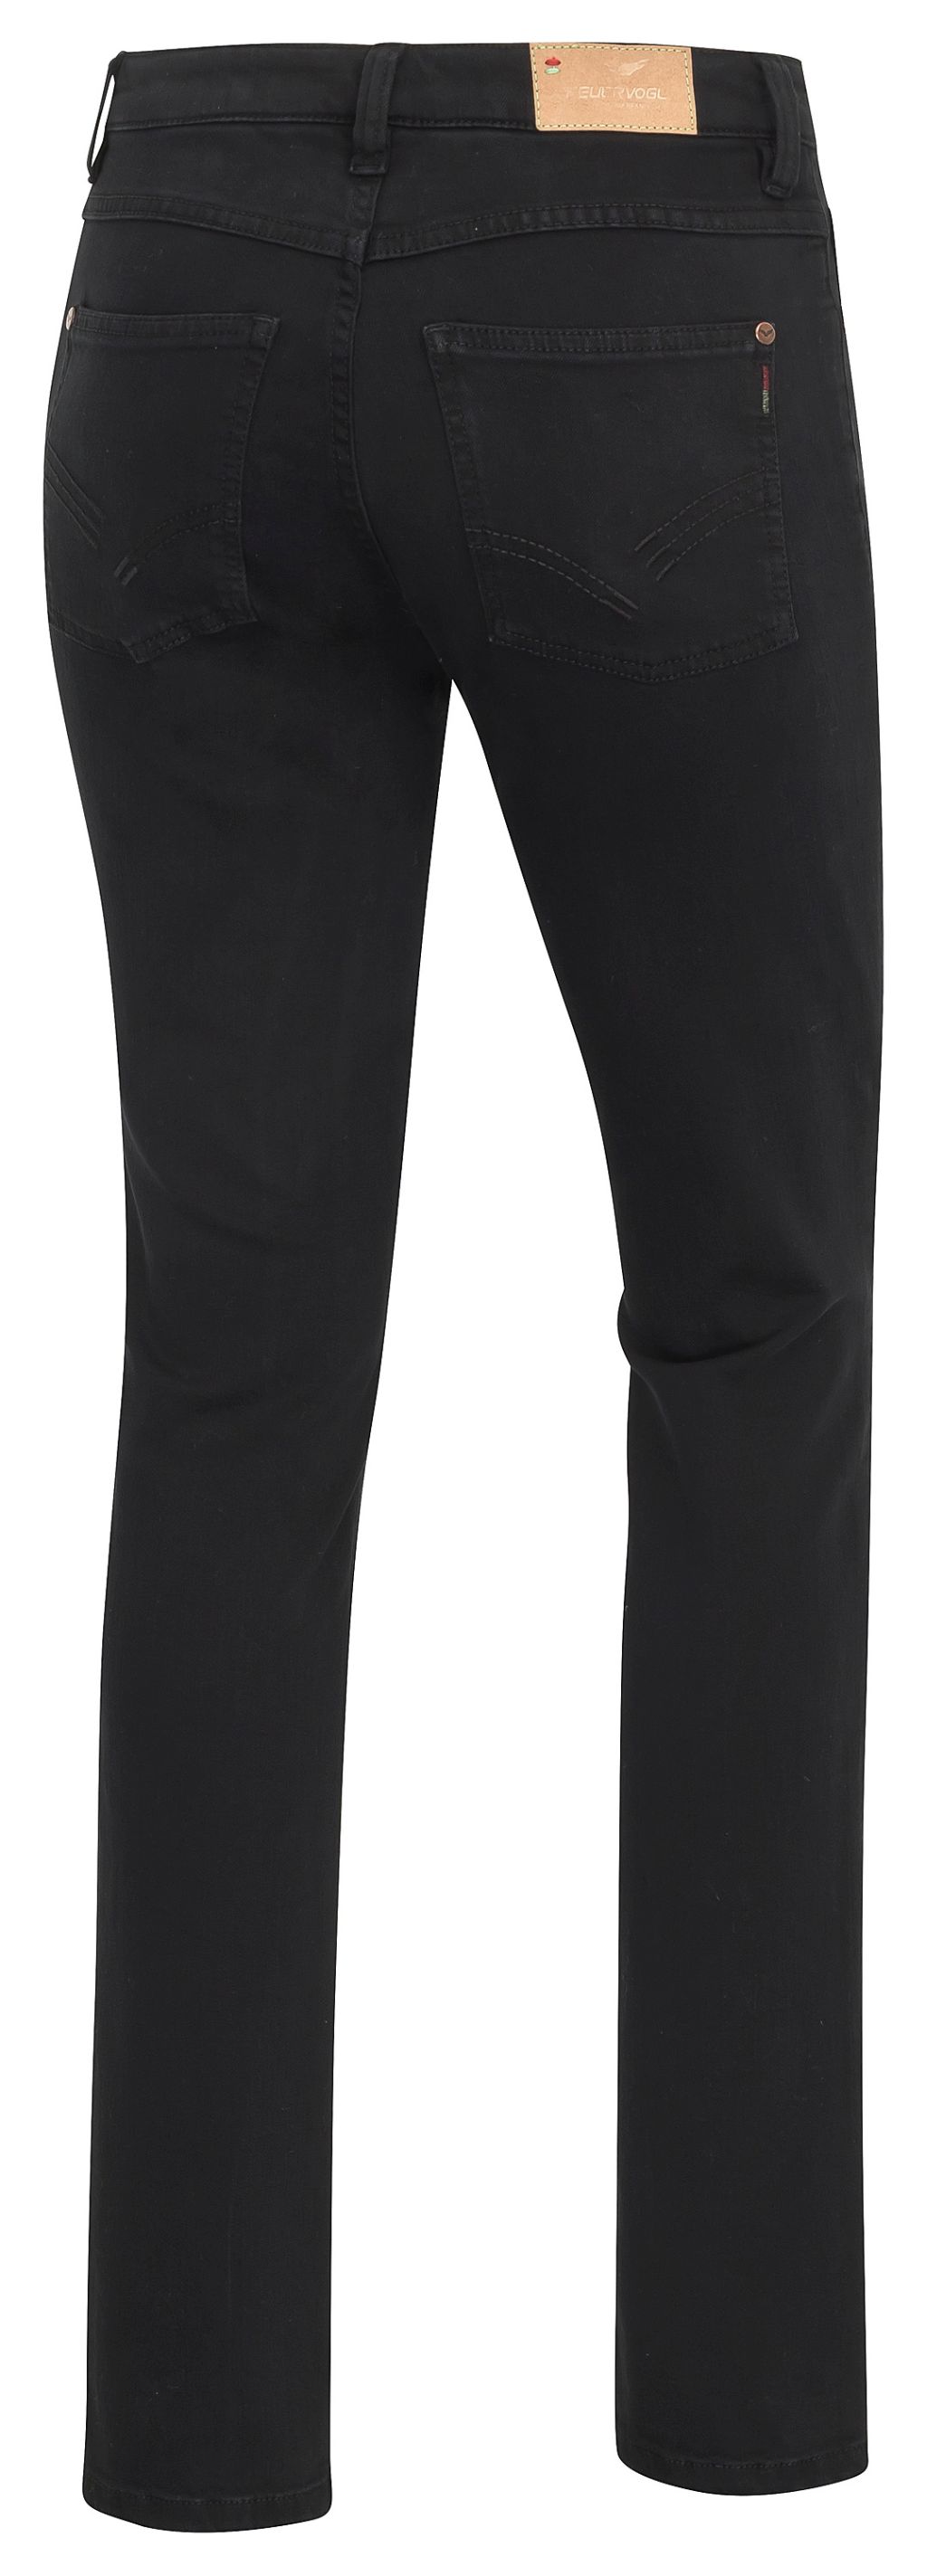 Svenja Black-Black Slim Fit Medium Waist Jeans - Bio-Baumwolle 36